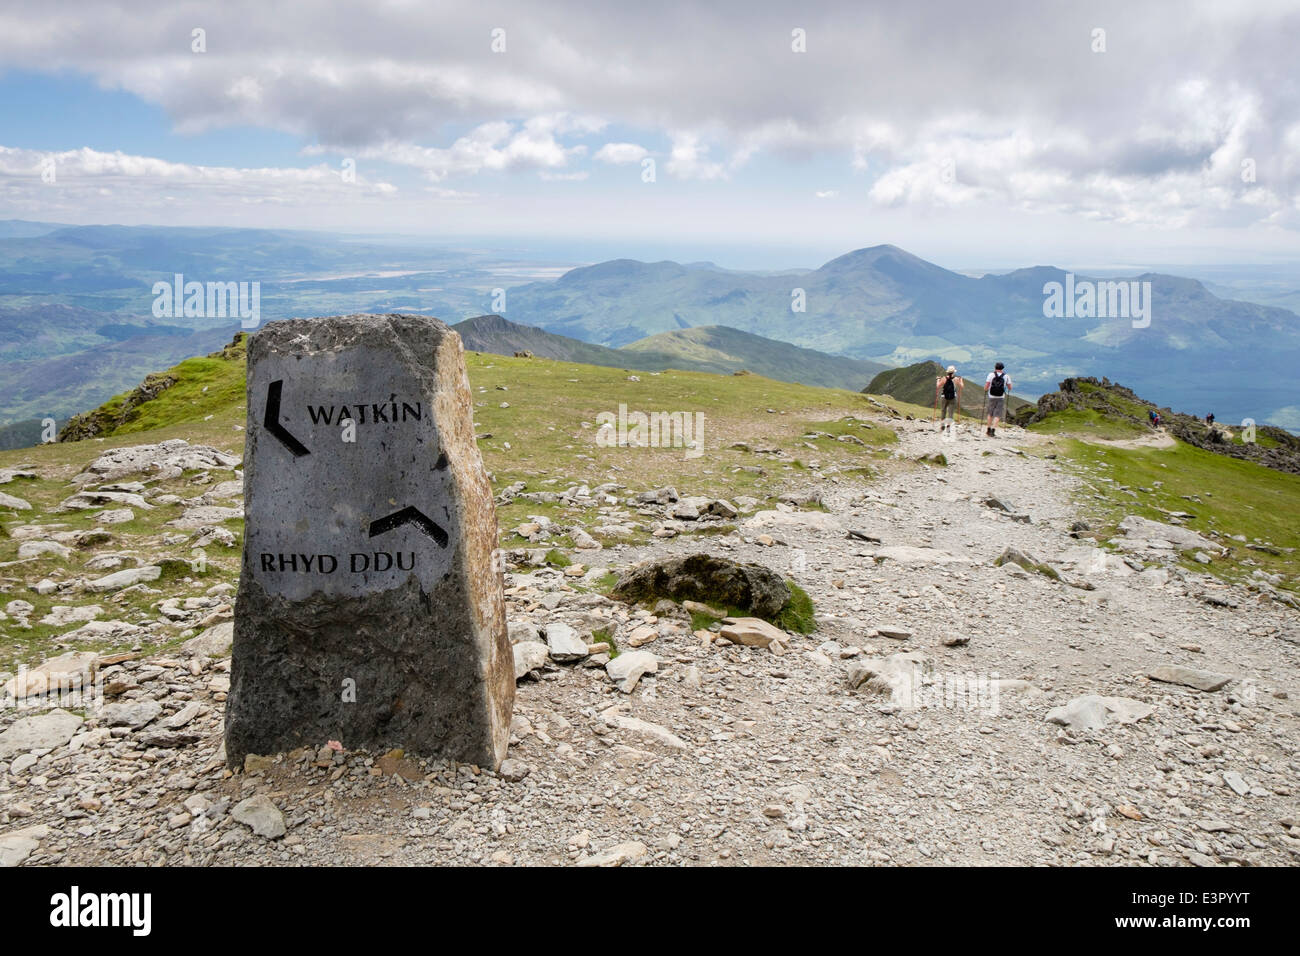 Melden Sie für Watkin und Rhyd Ddu Wege auf Mount Snowdon in Berge von Snowdonia-Nationalpark, Gwynedd, Nordwales, UK, Großbritannien Stockfoto